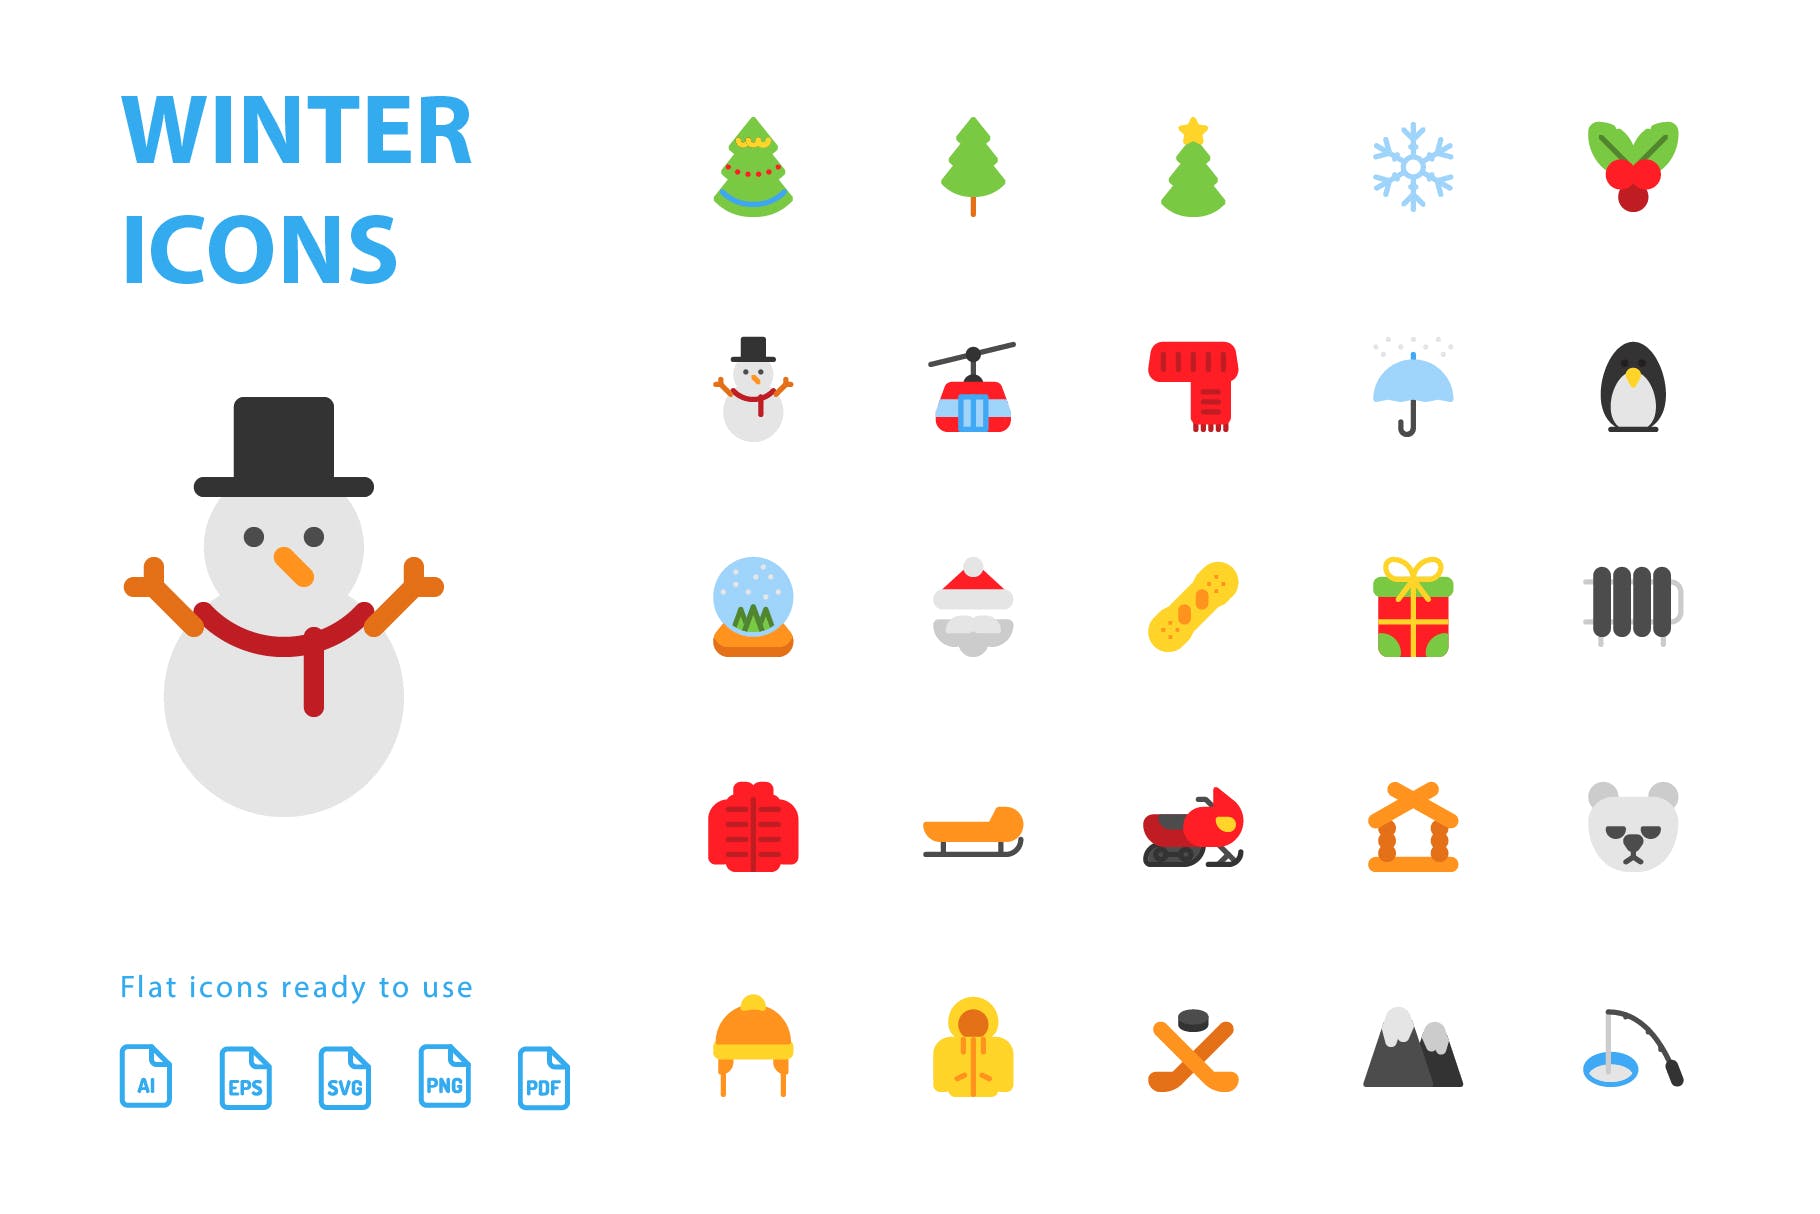 25枚冬天主题扁平设计风格矢量素材库精选图标v1 Winter Flat Icons插图(2)